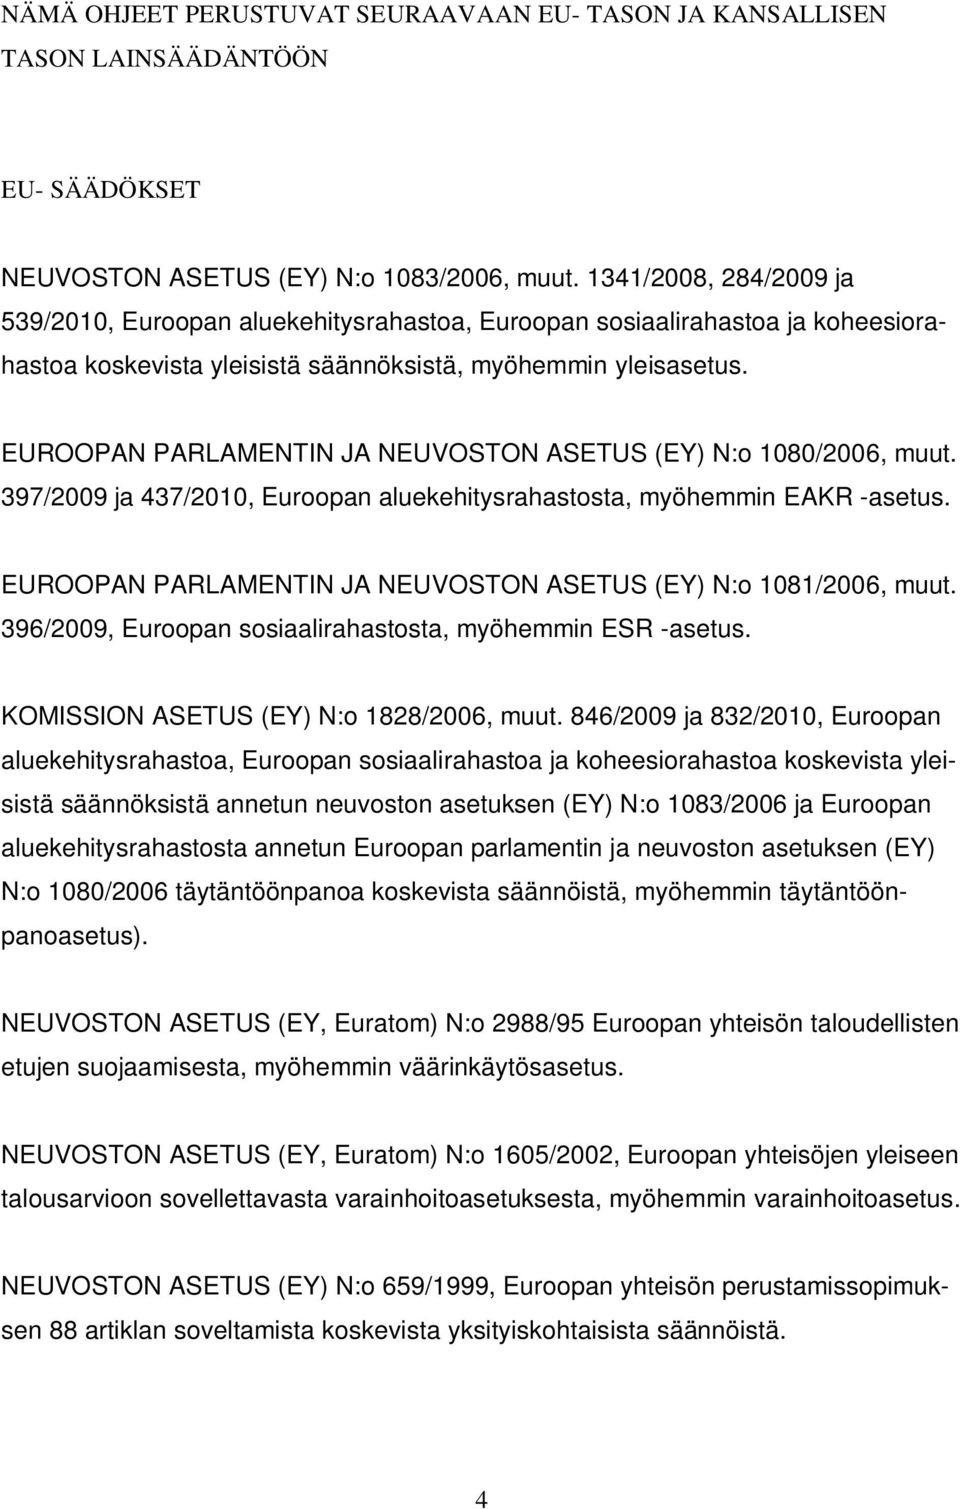 EUROOPAN PARLAMENTIN JA NEUVOSTON ASETUS (EY) N:o 1080/2006, muut. 397/2009 ja 437/2010, Euroopan aluekehitysrahastosta, myöhemmin EAKR -asetus.